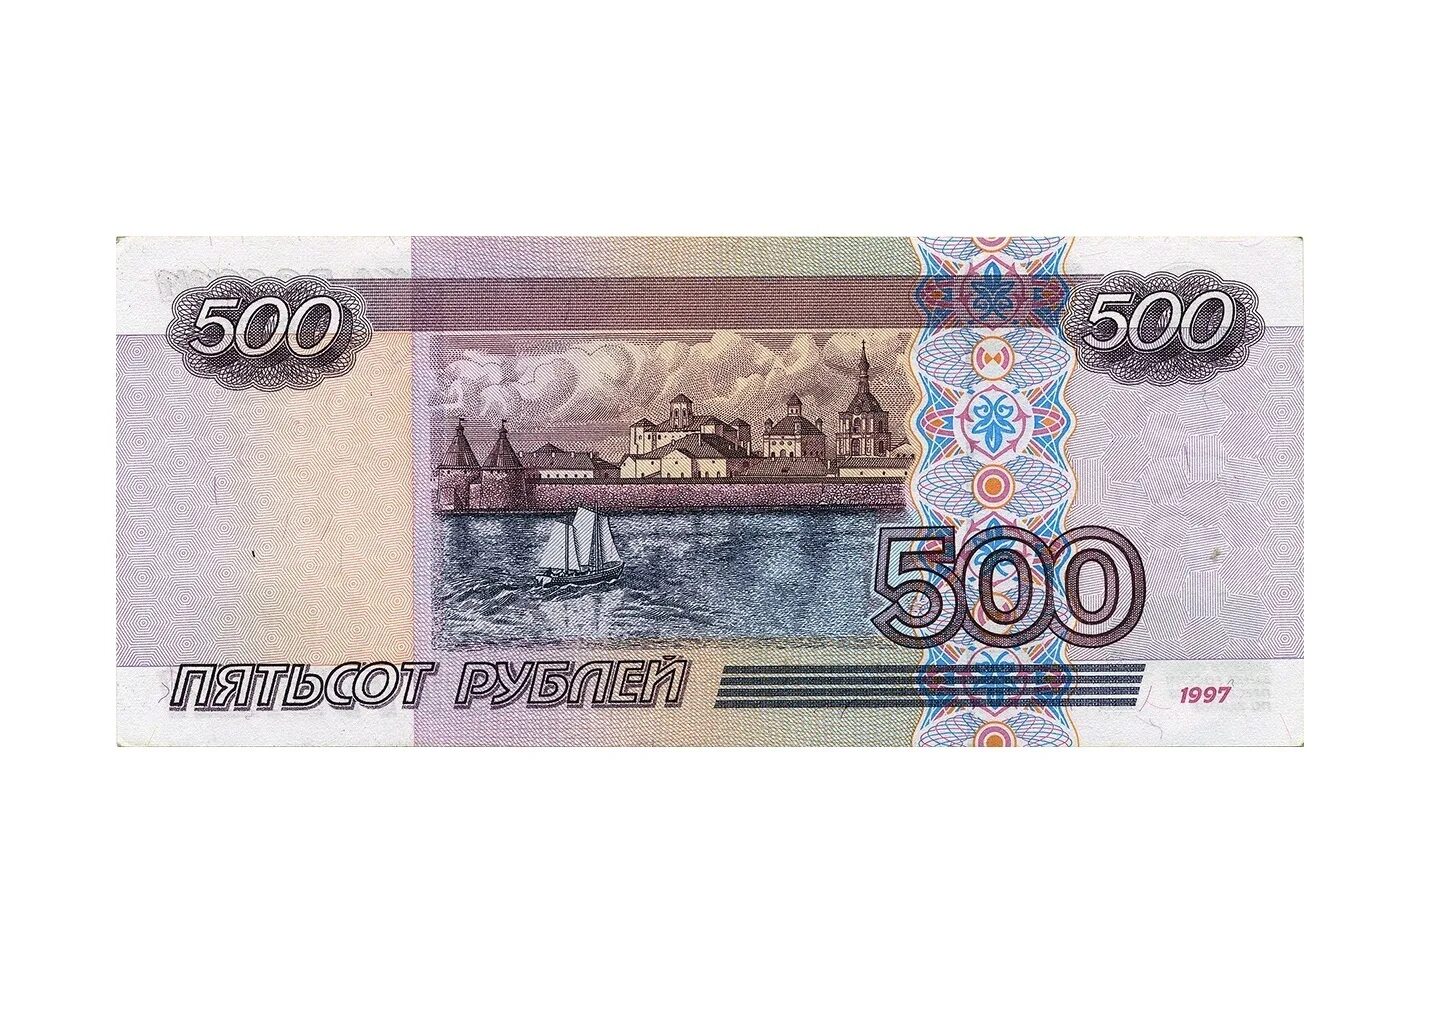 Размер 500 рублей. Российские купюры 500 рублей. Купюры денег 500 рублей.